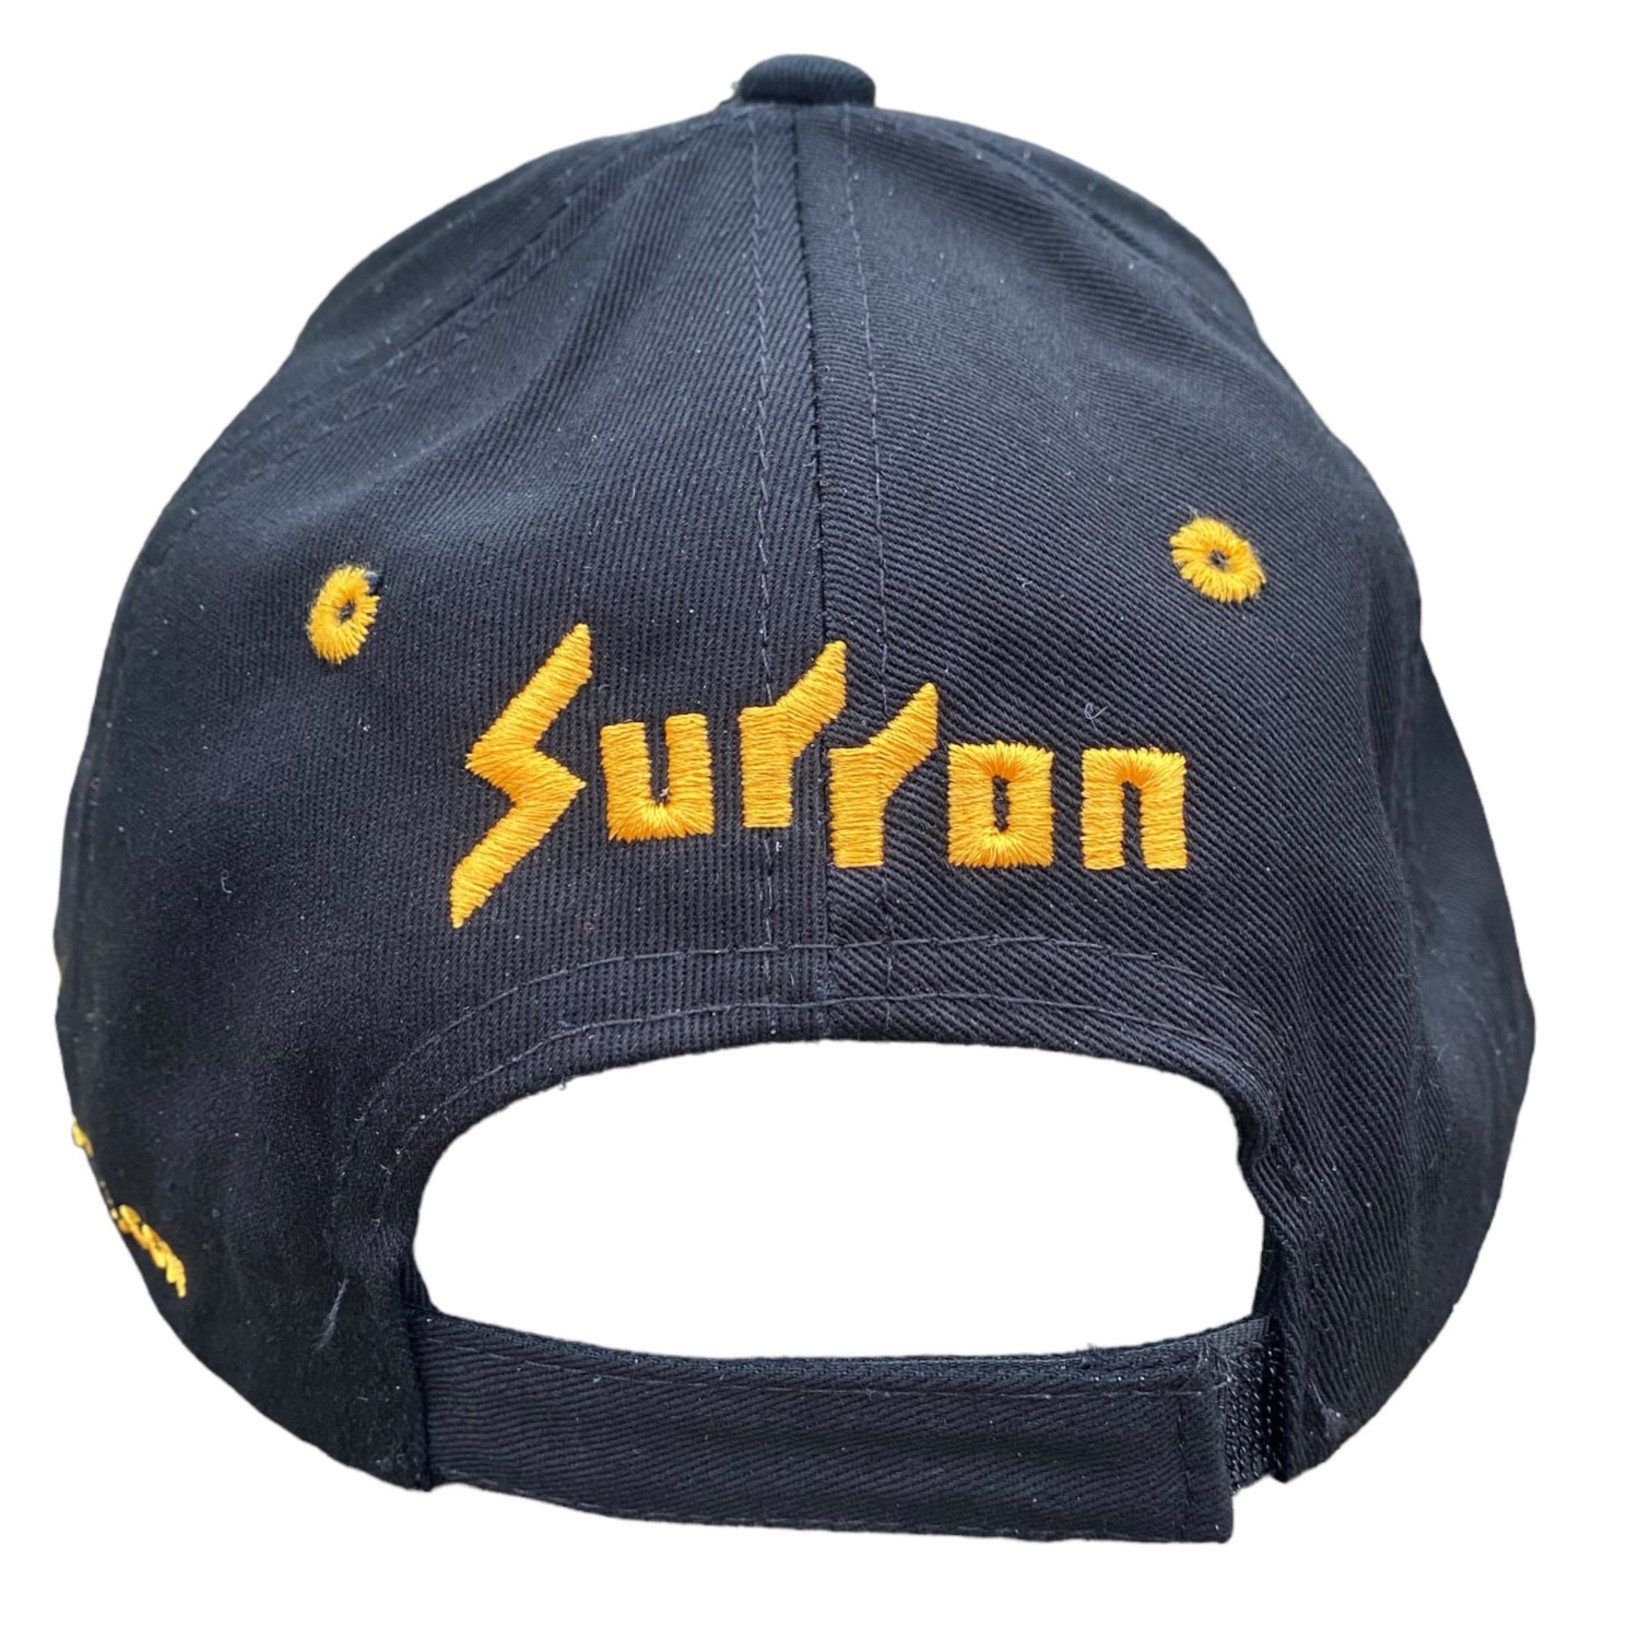 Surron SurronCenter cap / pet